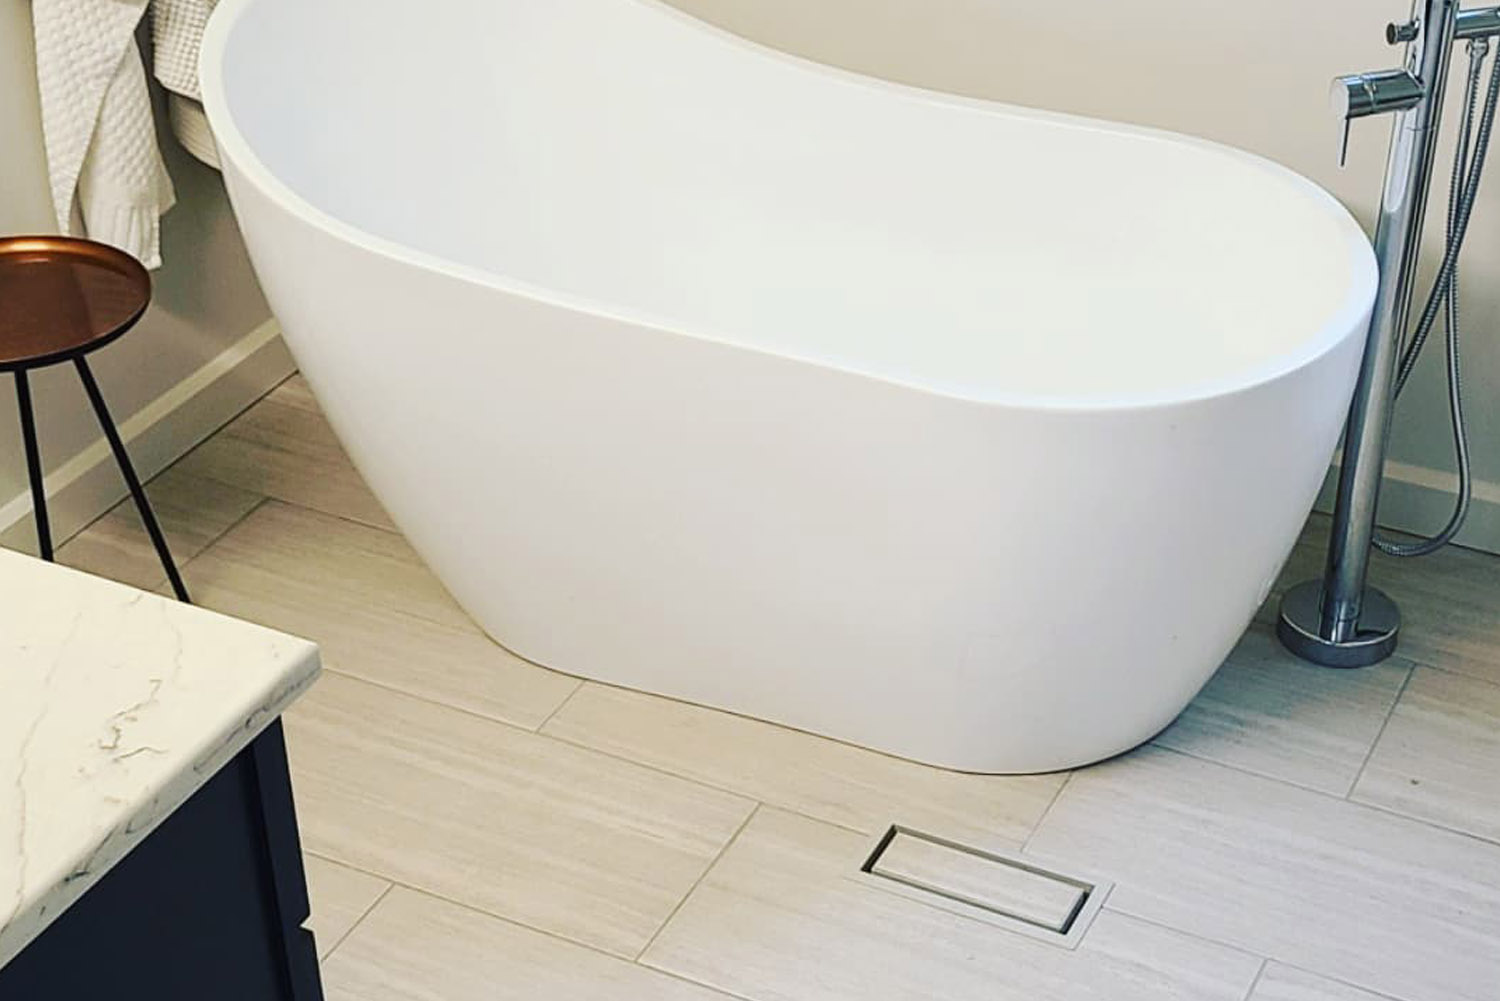 Soaker tub for the win plus custom tiles to make the elegant design really shine.